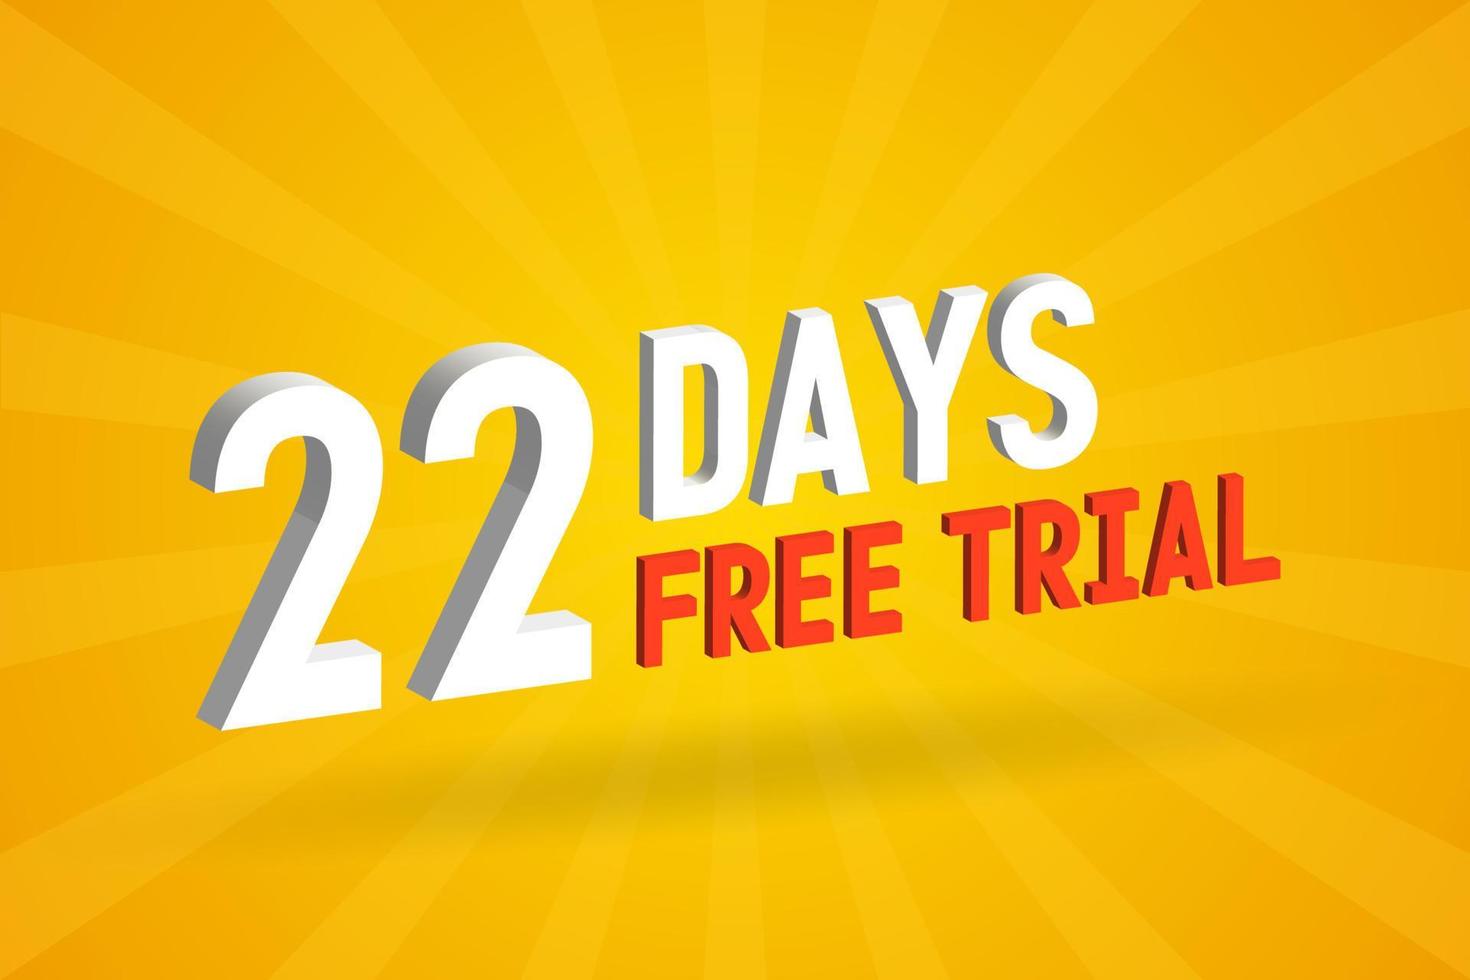 oferta gratuita 22 dias de teste gratuito vetor de estoque de texto 3d